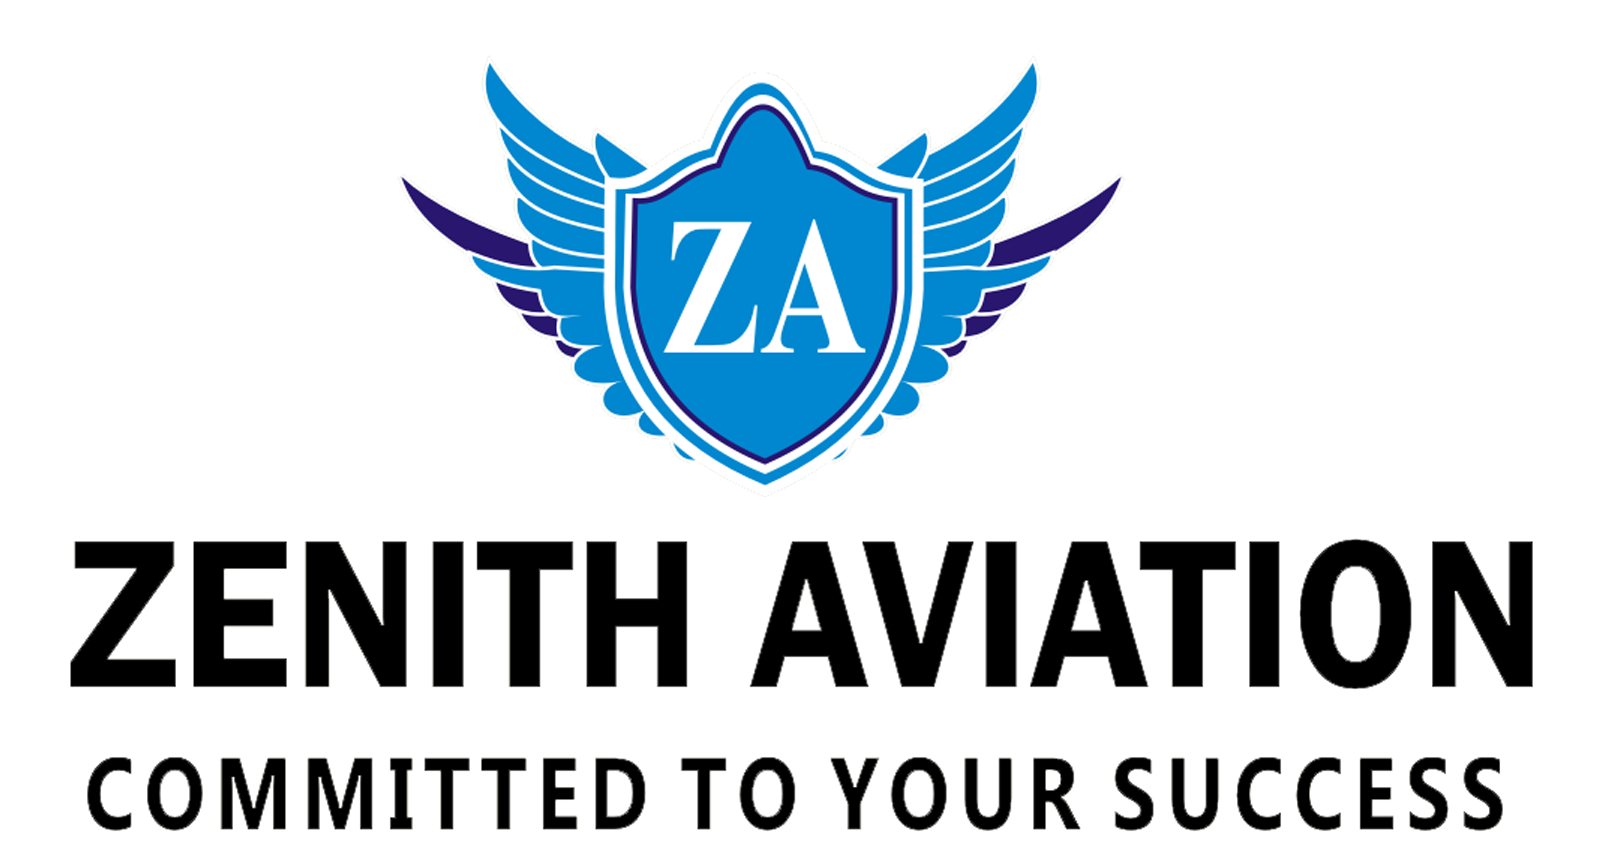 Zenith Aviation